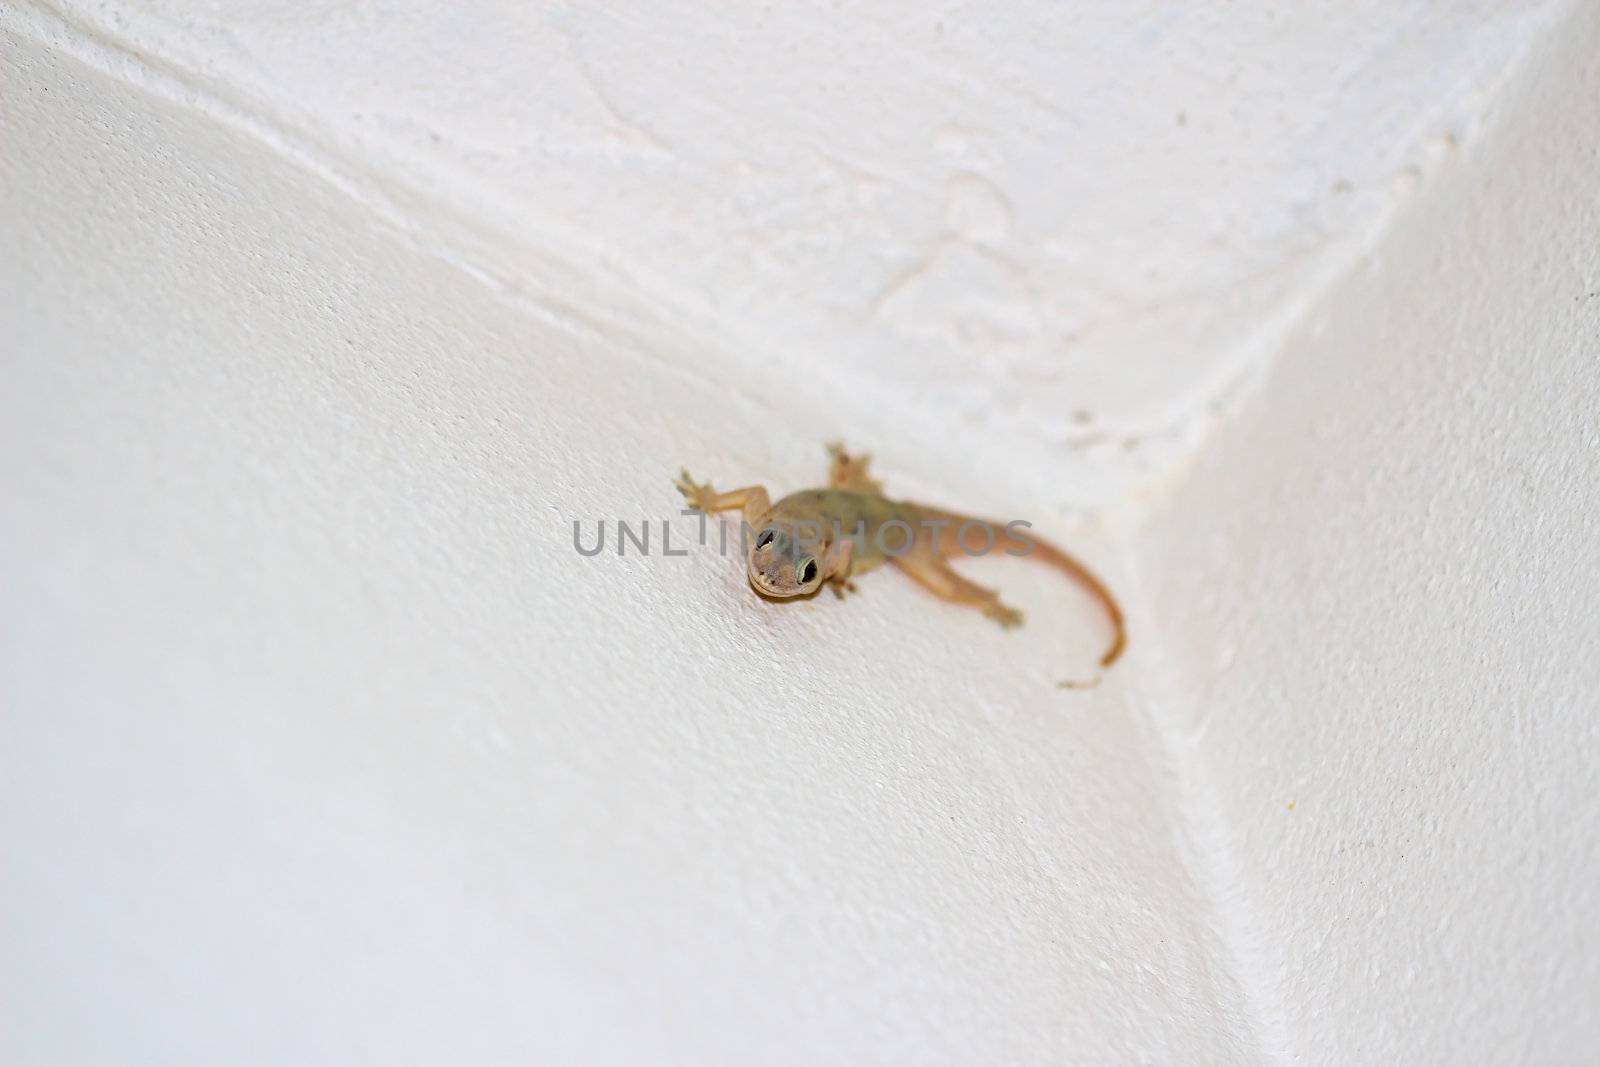 Lizard in wall